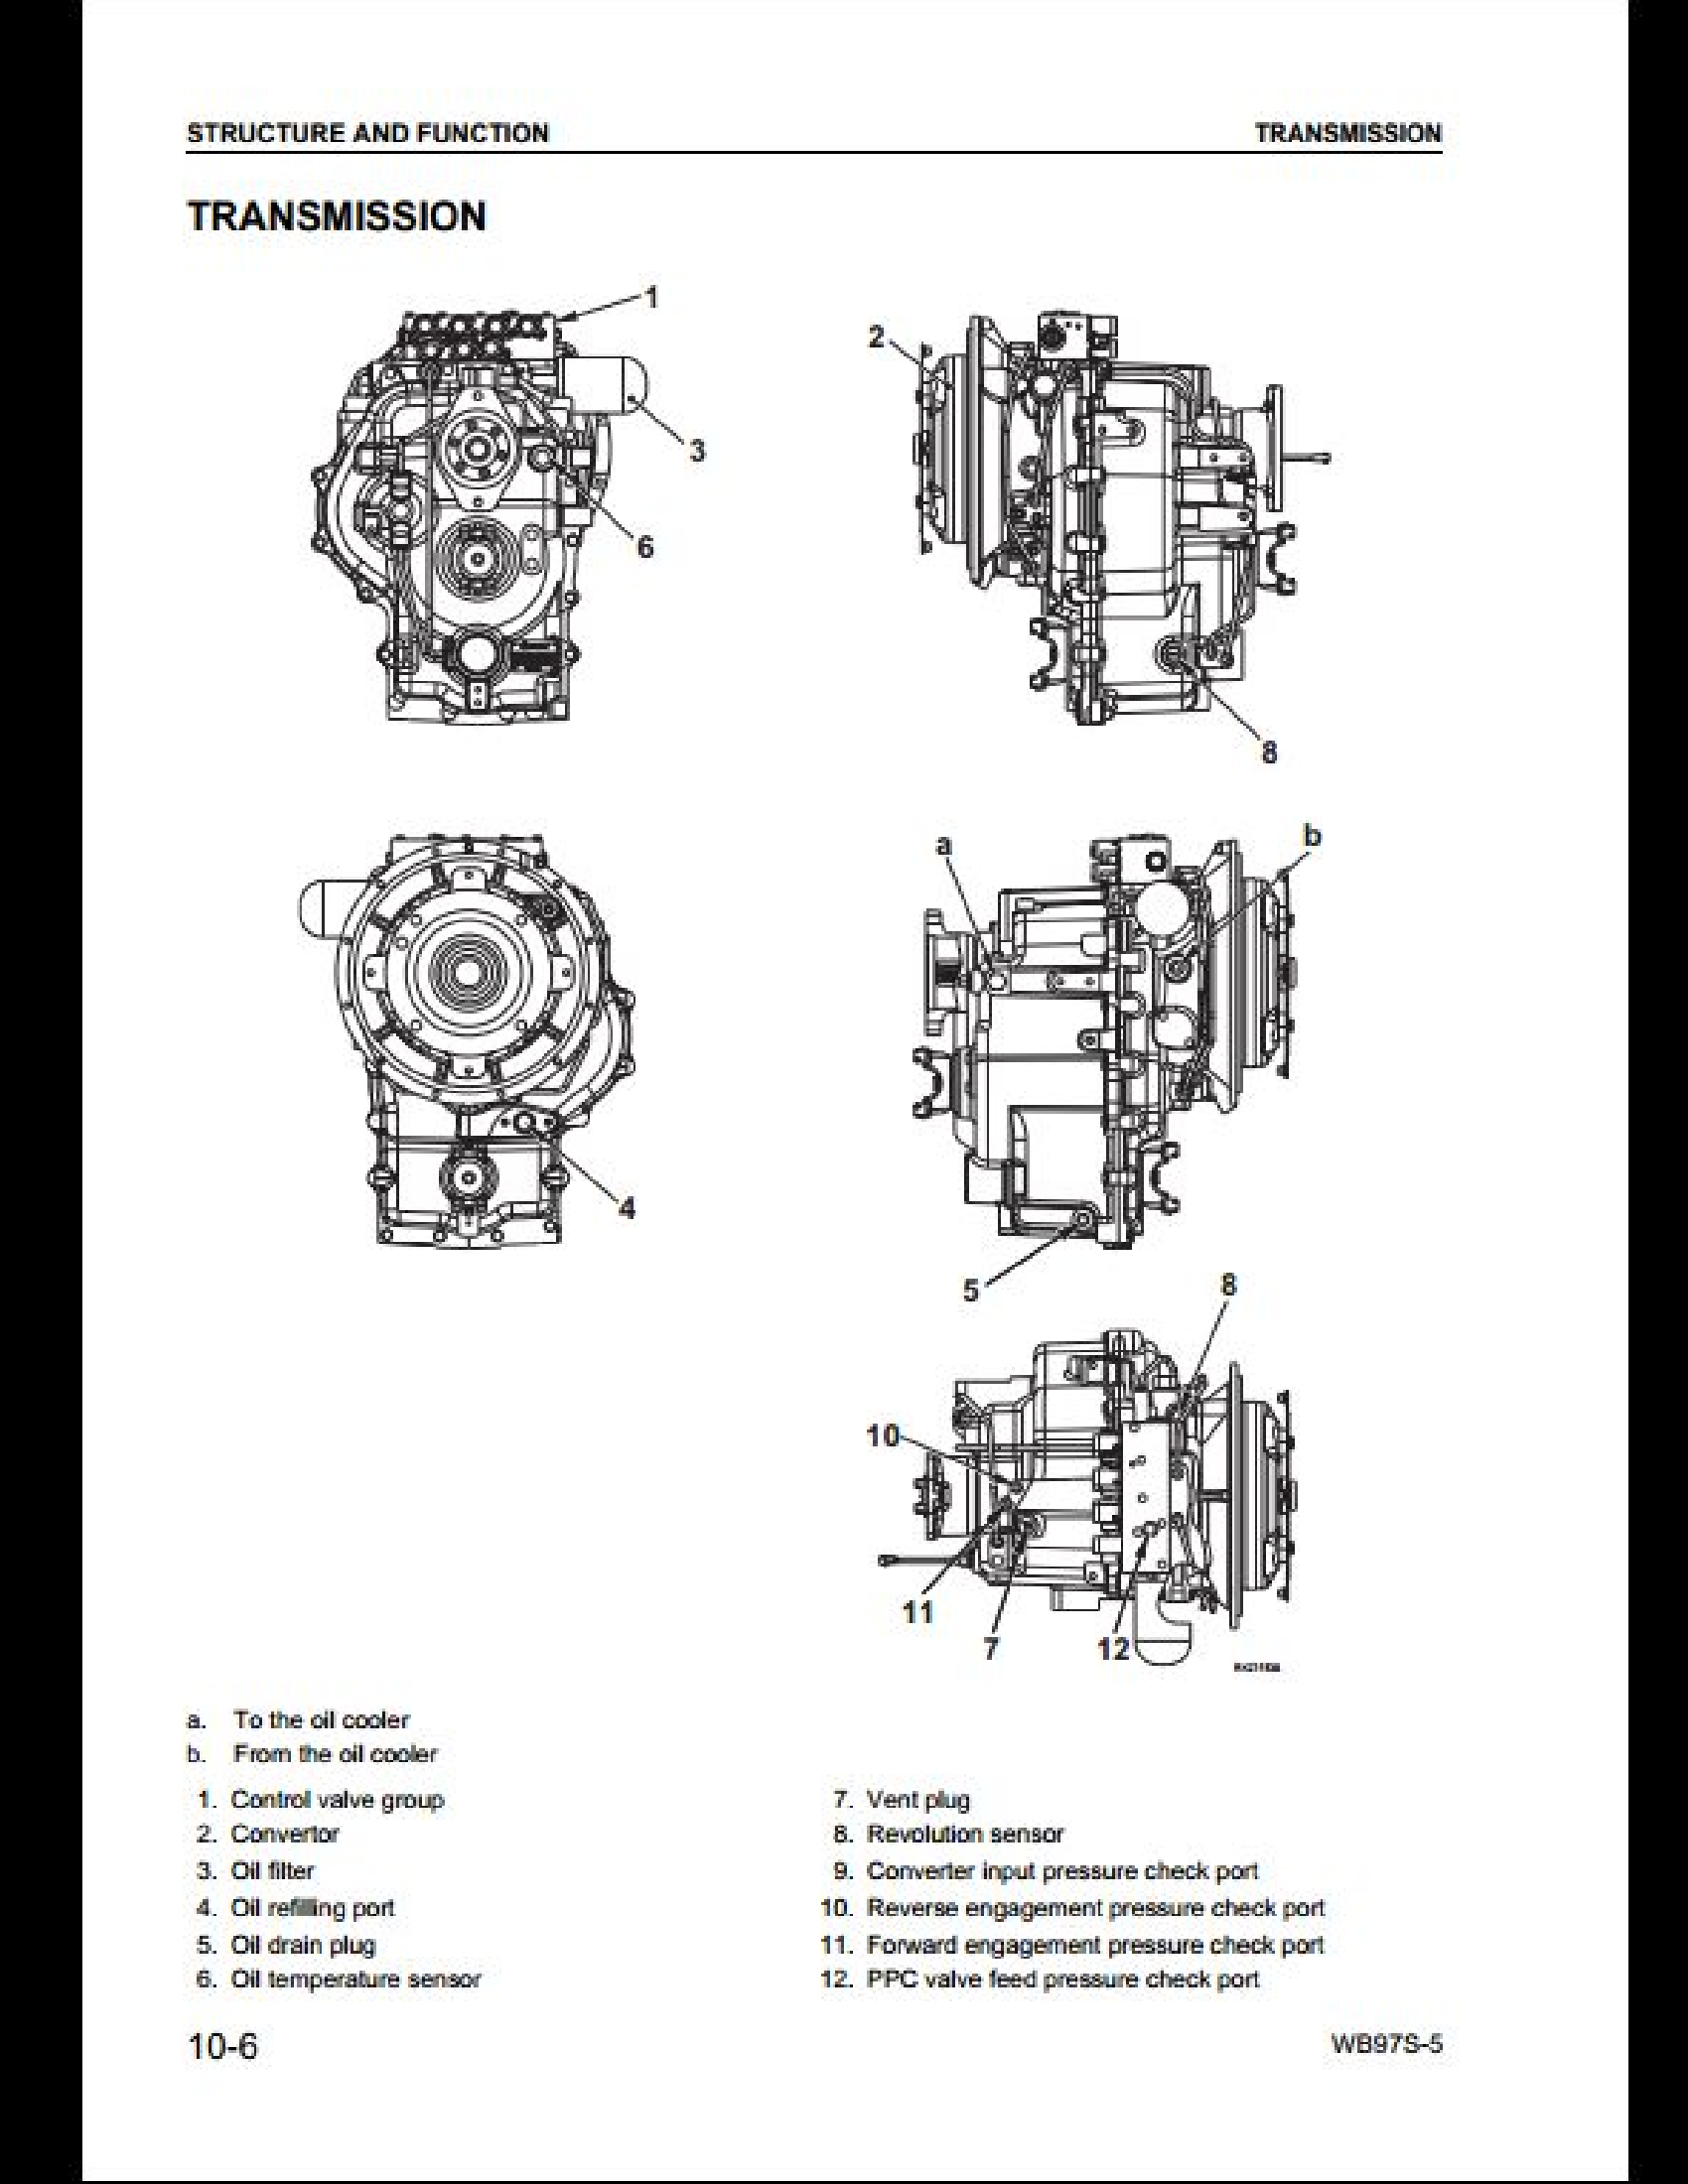 KOMATSU WB97S-5 Backhoe Loader manual